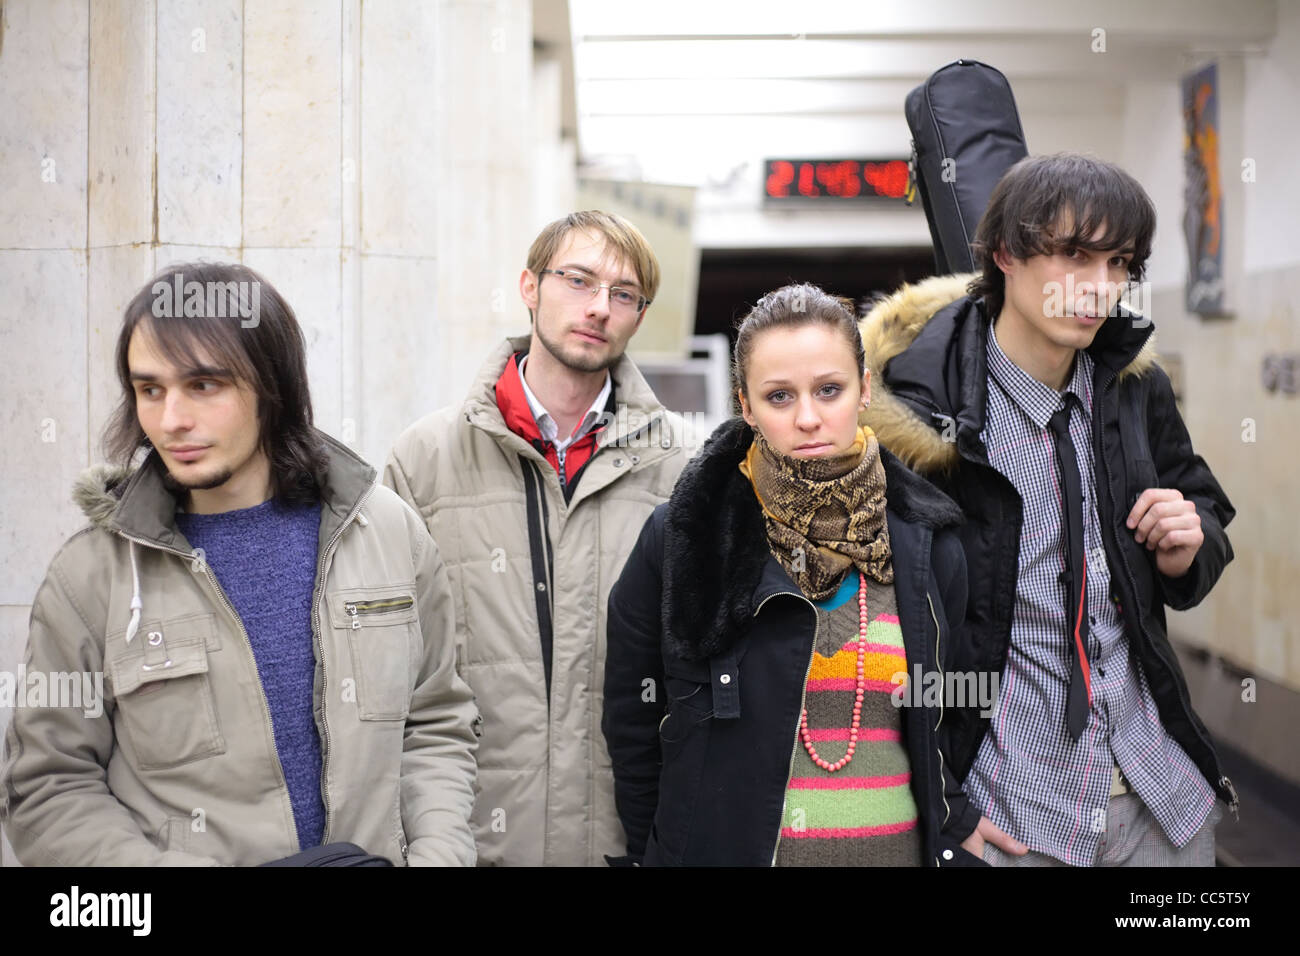 Quatre jeunes musiciens à la station de métro, se concentrer sur la fille Banque D'Images